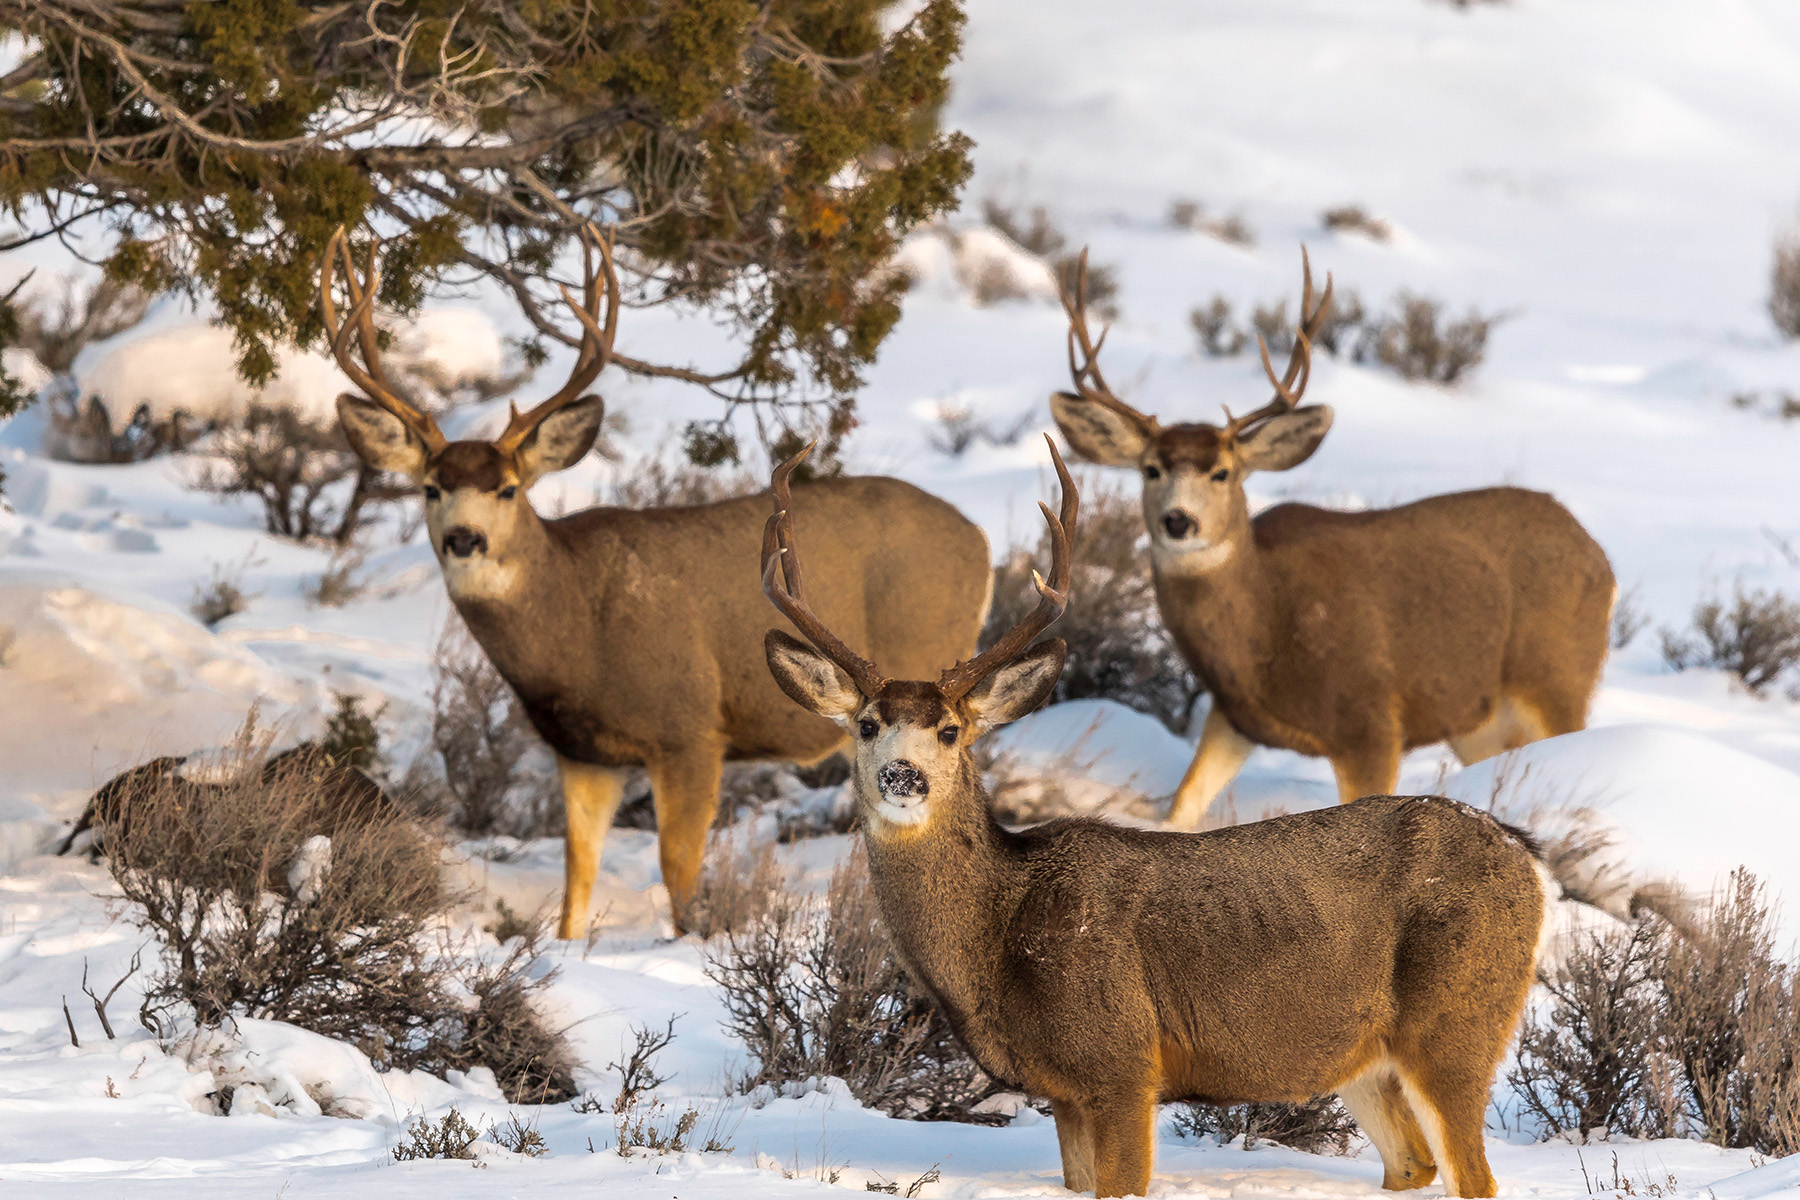 3 mule deer standing in snow